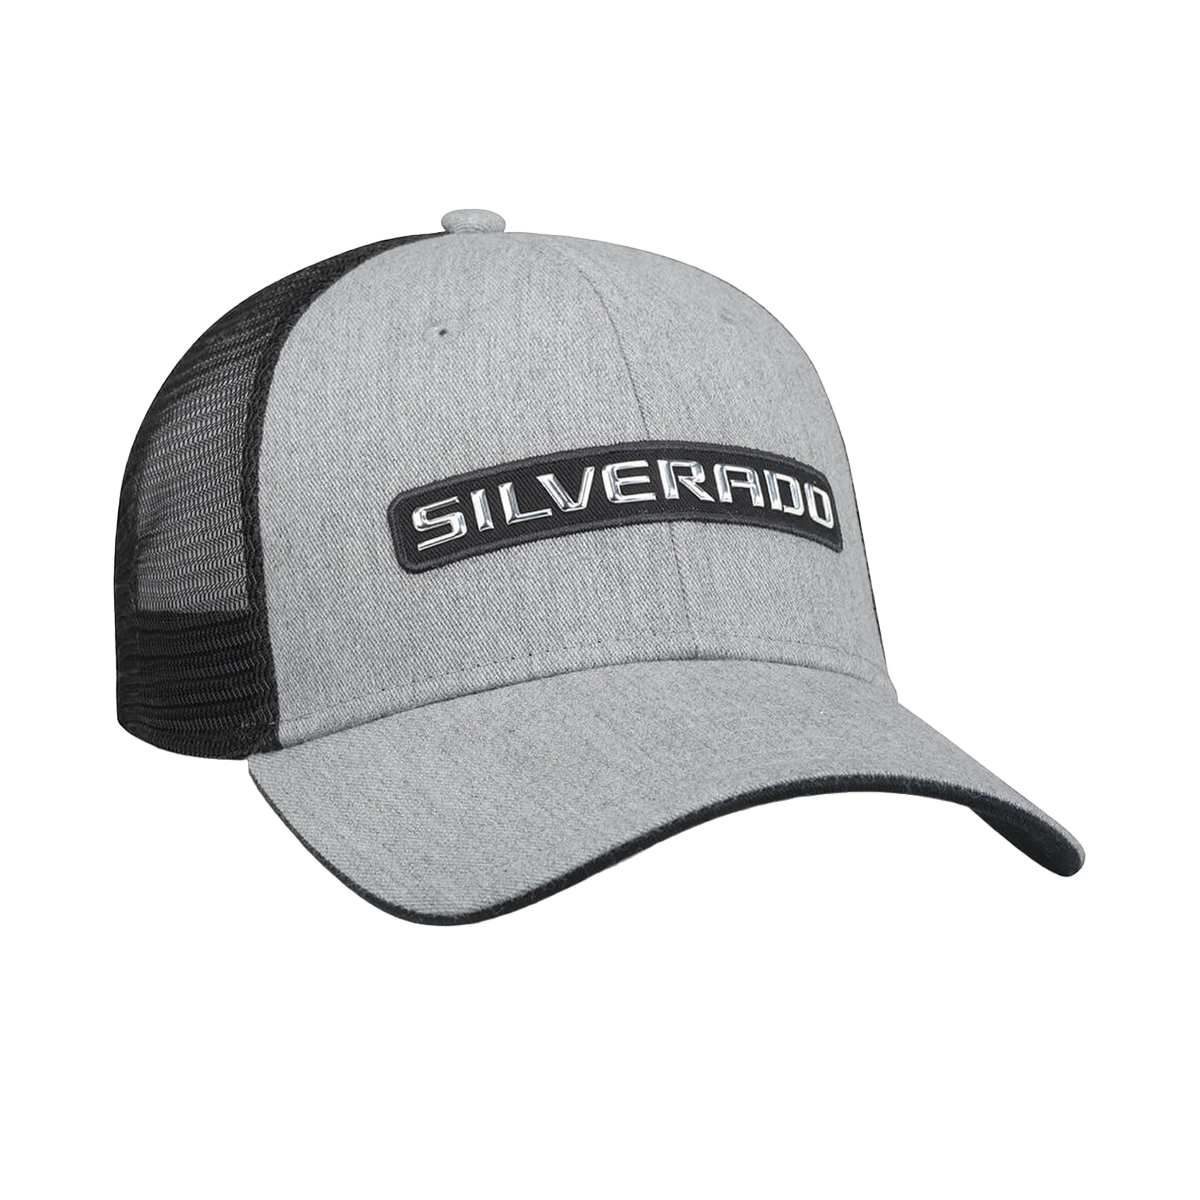 Chevy Silverado Badge Hat